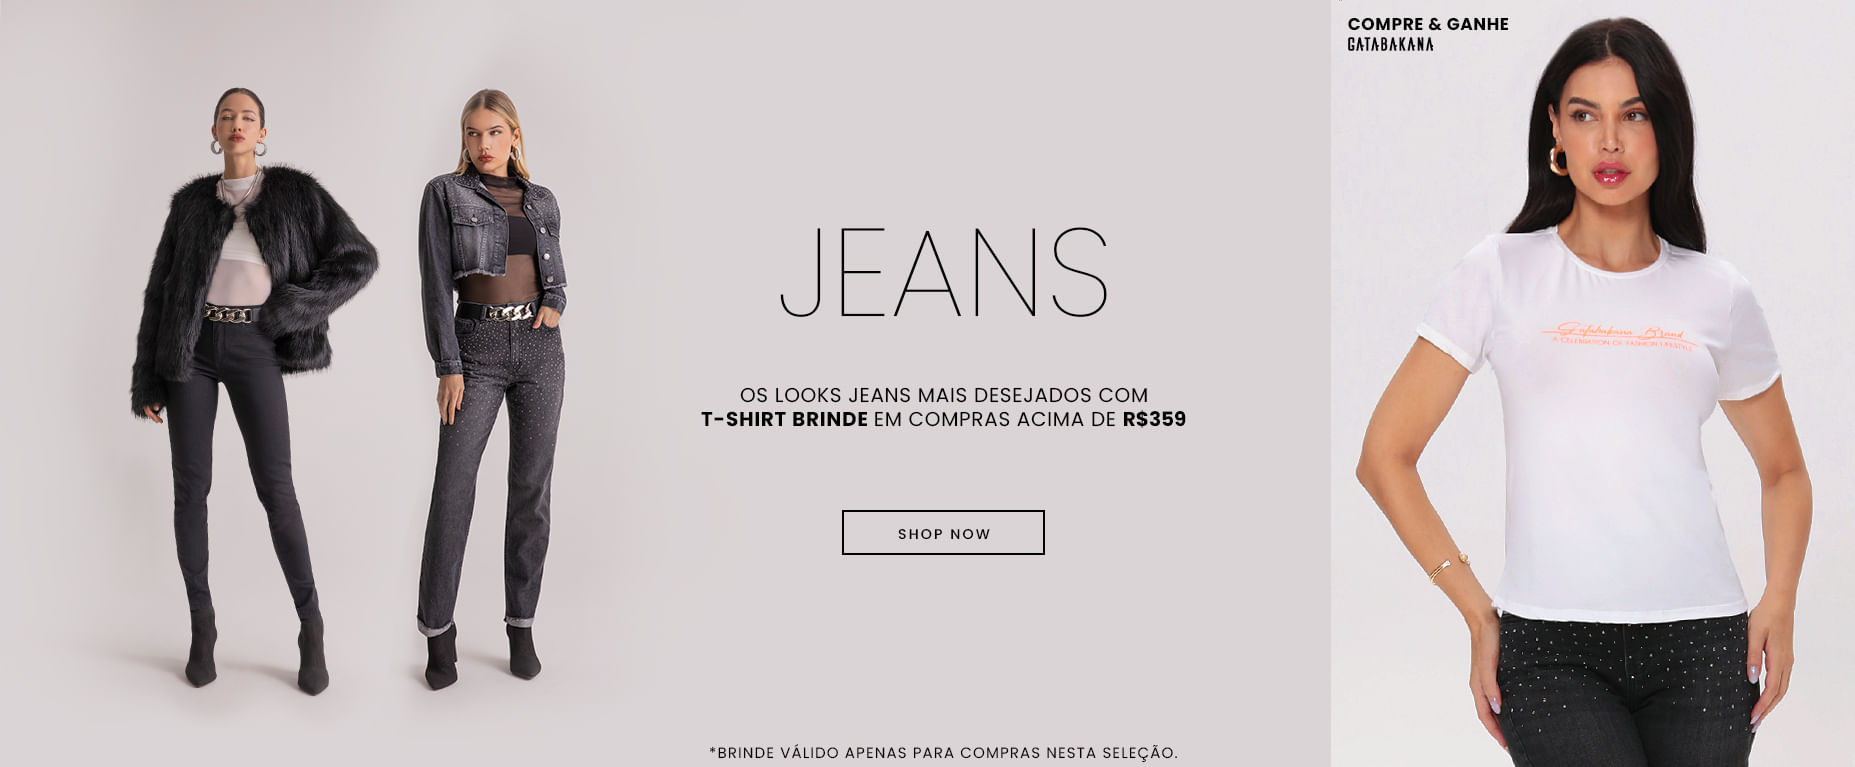 Os looks jeans mais desejados com BRINDE em comprar acima de R$359!